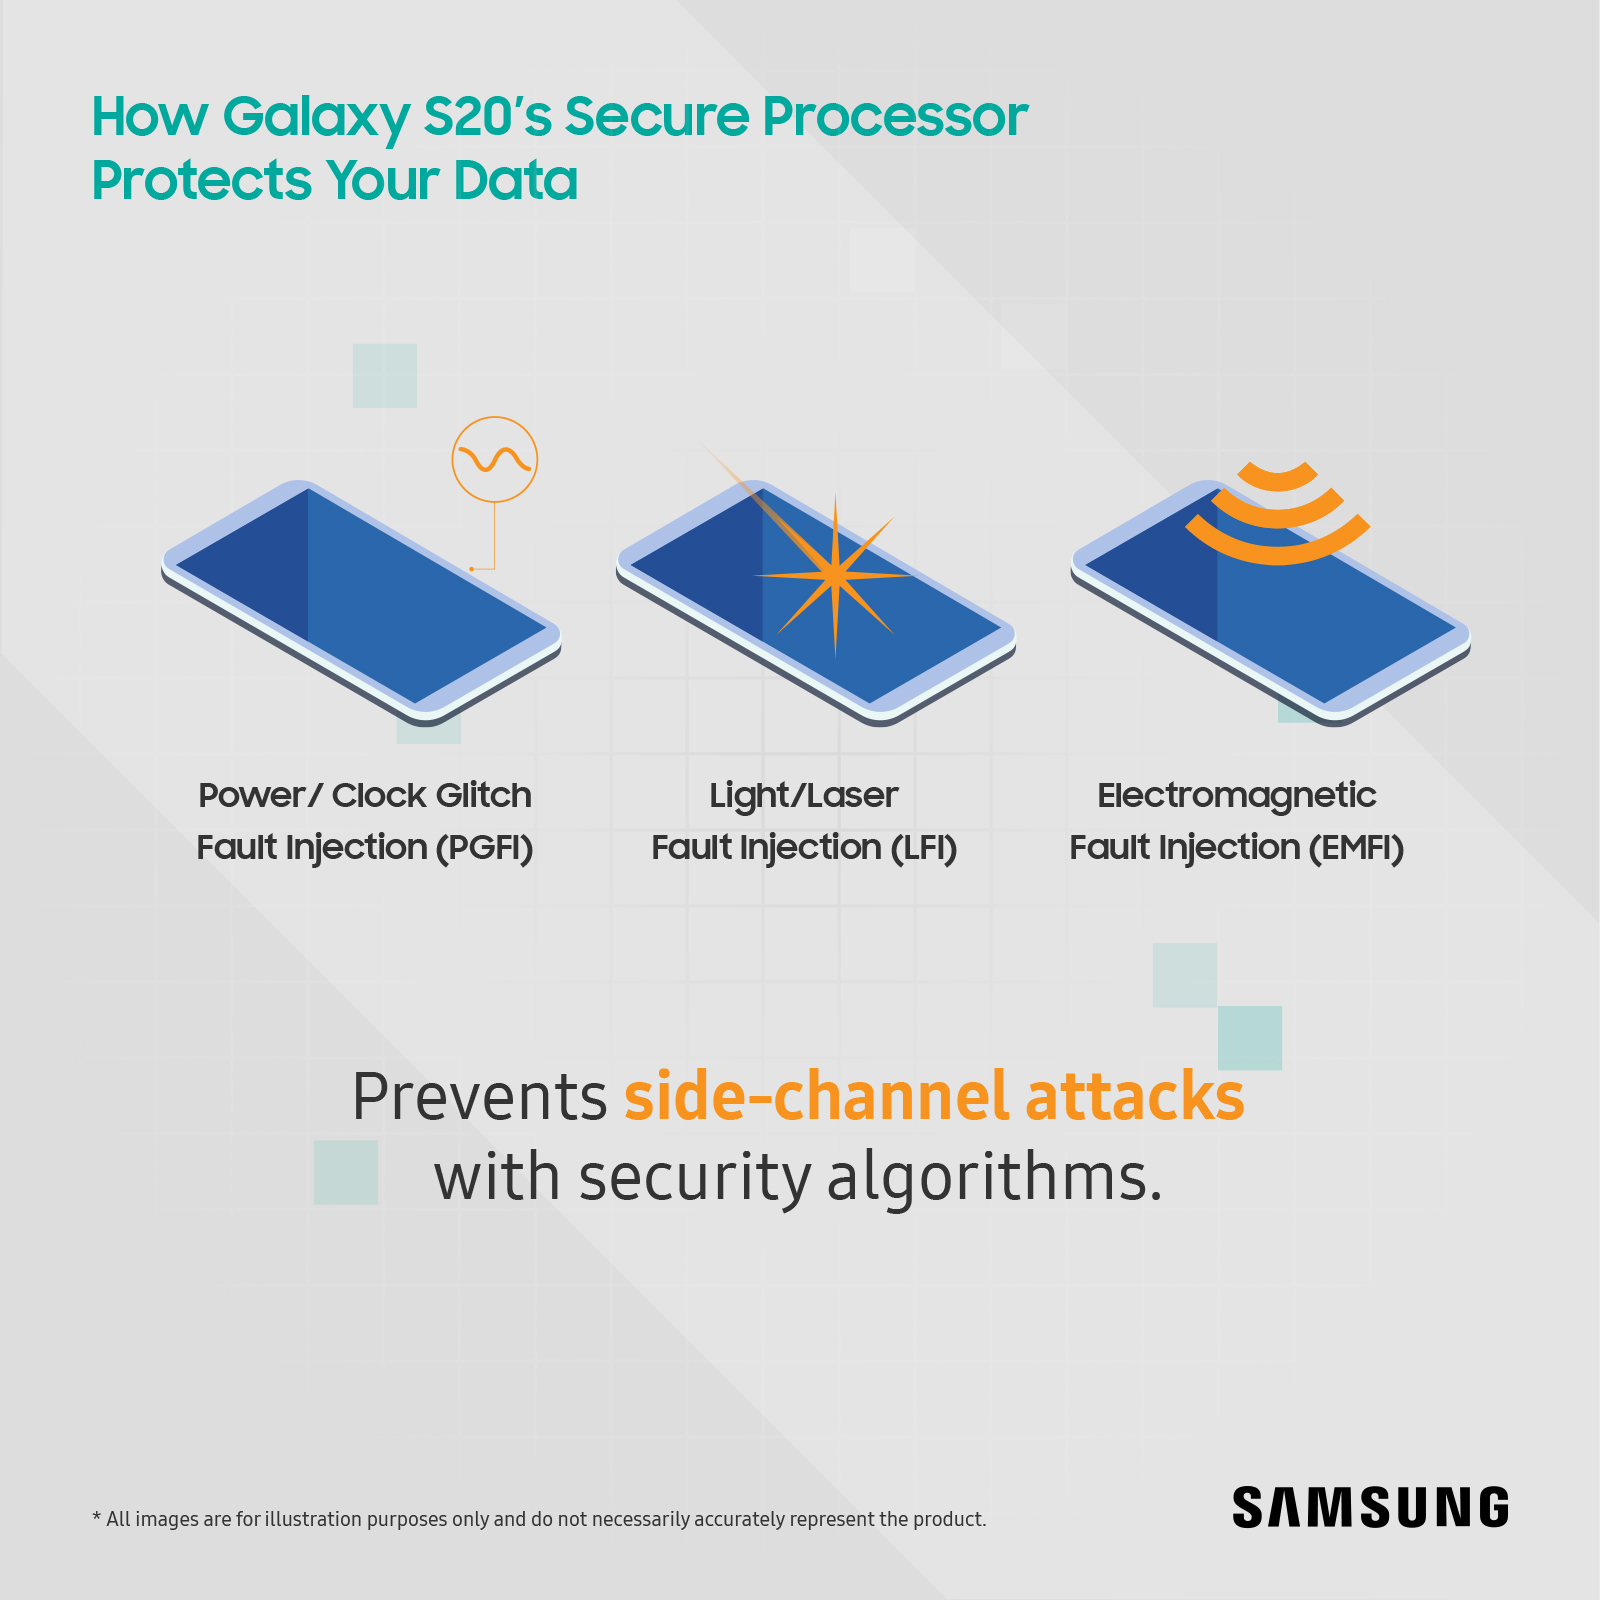 المعالج الآمن في Galaxy S20 يعزز مستويات الحماية والأمان لجهازك